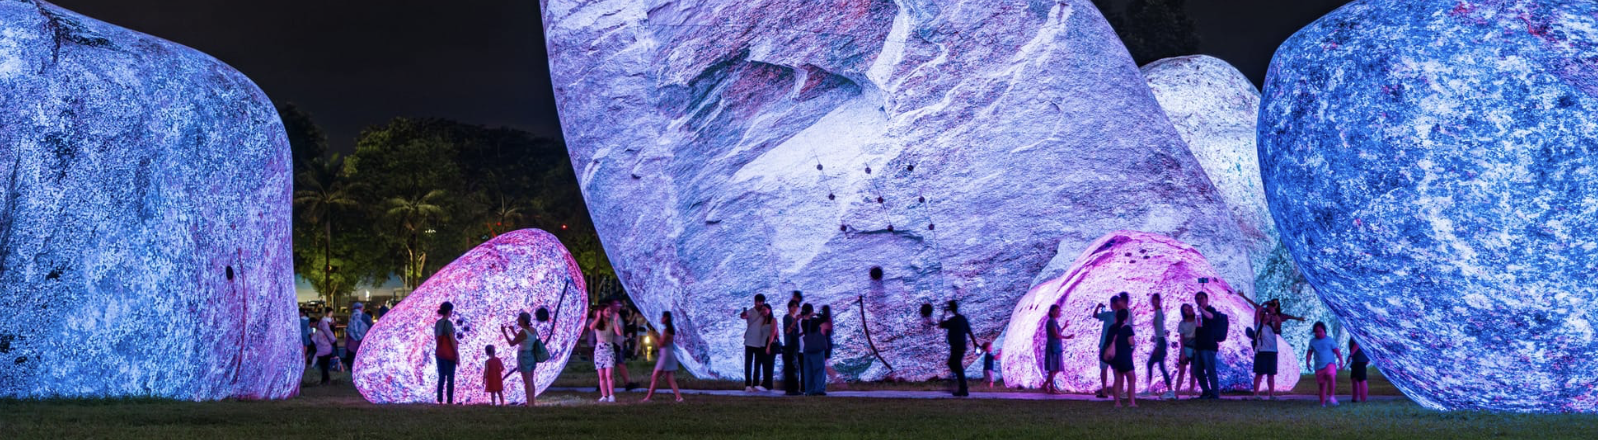 Giant Glowing Boulders Illuminate Singapore #ArtTuesday